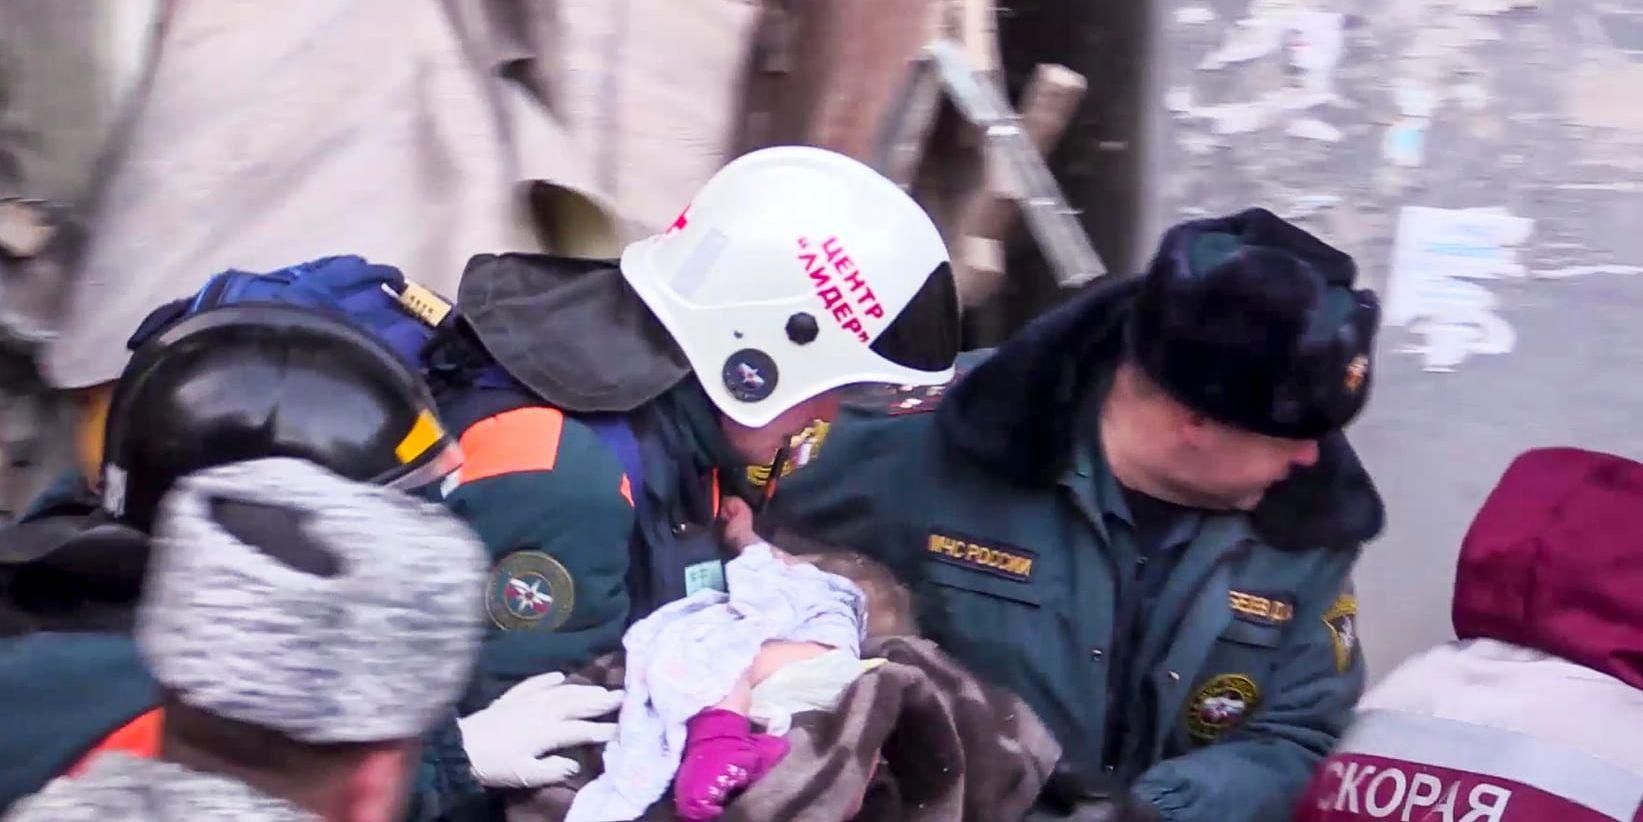 Ett tio månader gammalt barn har räddats ur rasmassorna, rapporterar ryska medier på tisdagen.